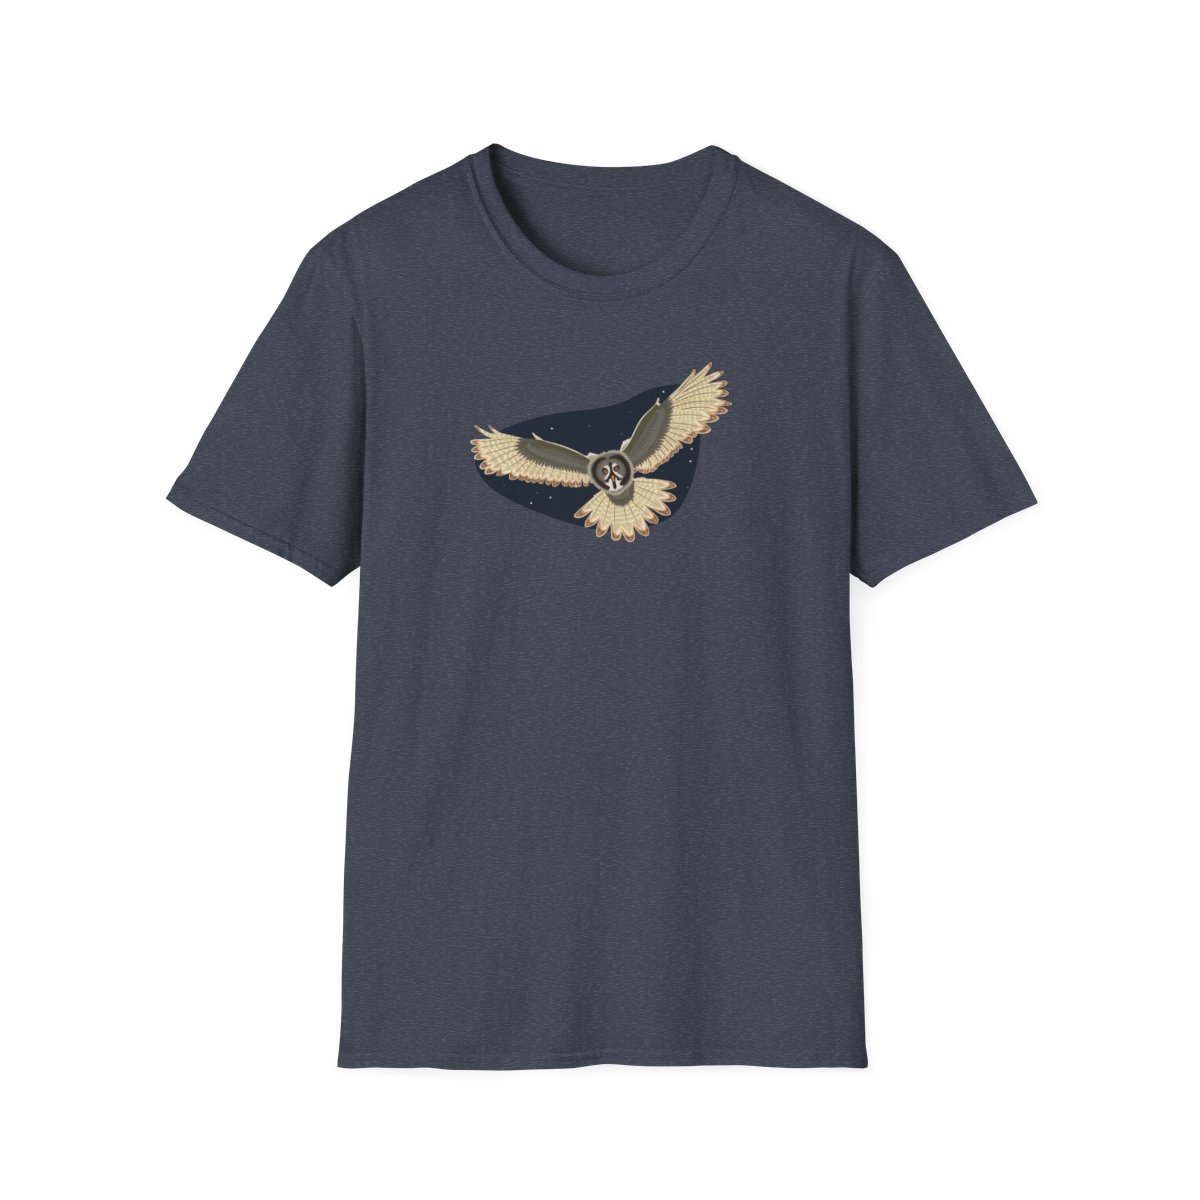 Owl Unisex Softstyle T-Shirt product thumbnail image